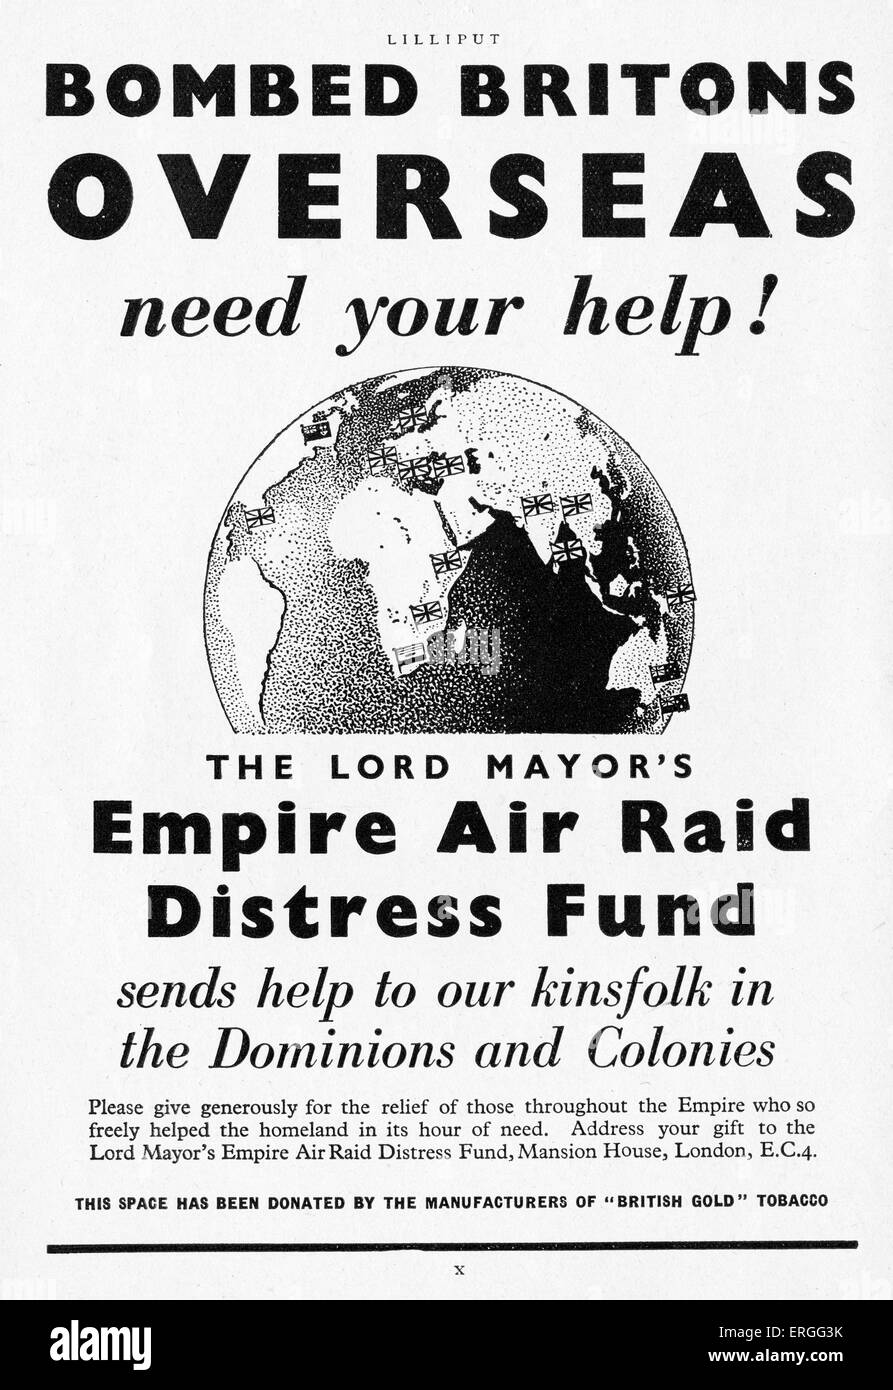 El señor alcalde 's Empire Air Raid angustia de Fondo - Campaña propoganda, julio de 1942. Titular: "bombardearon los británicos en el extranjero necesitan su ayuda". Apoyo a los ciudadanos en algunos dominios británicos y colonias. Durante WW2. Foto de stock